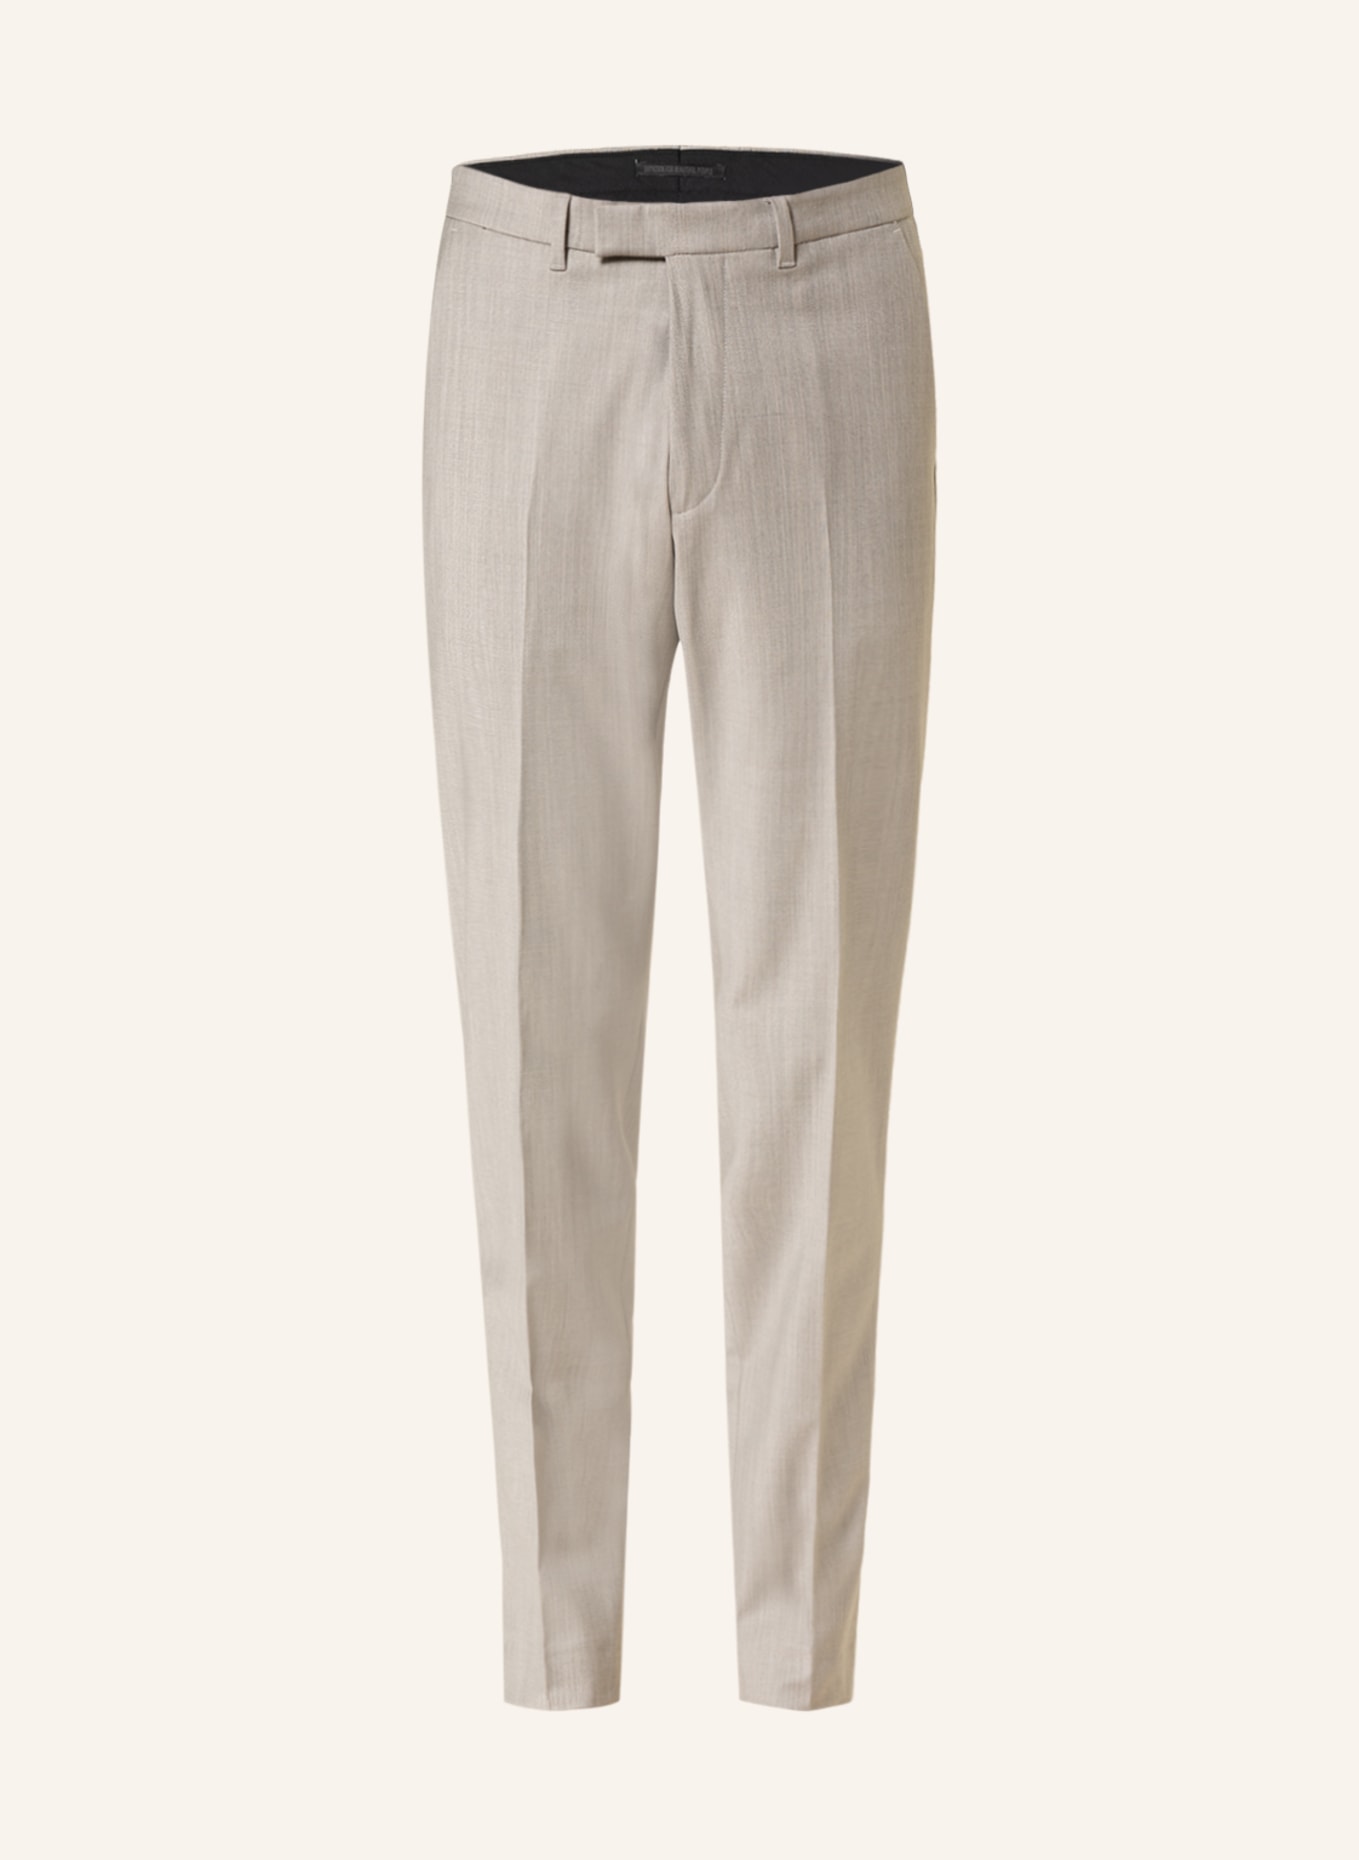 DRYKORN Suit trousers PIET slim fit, Color: 1700 (Image 1)